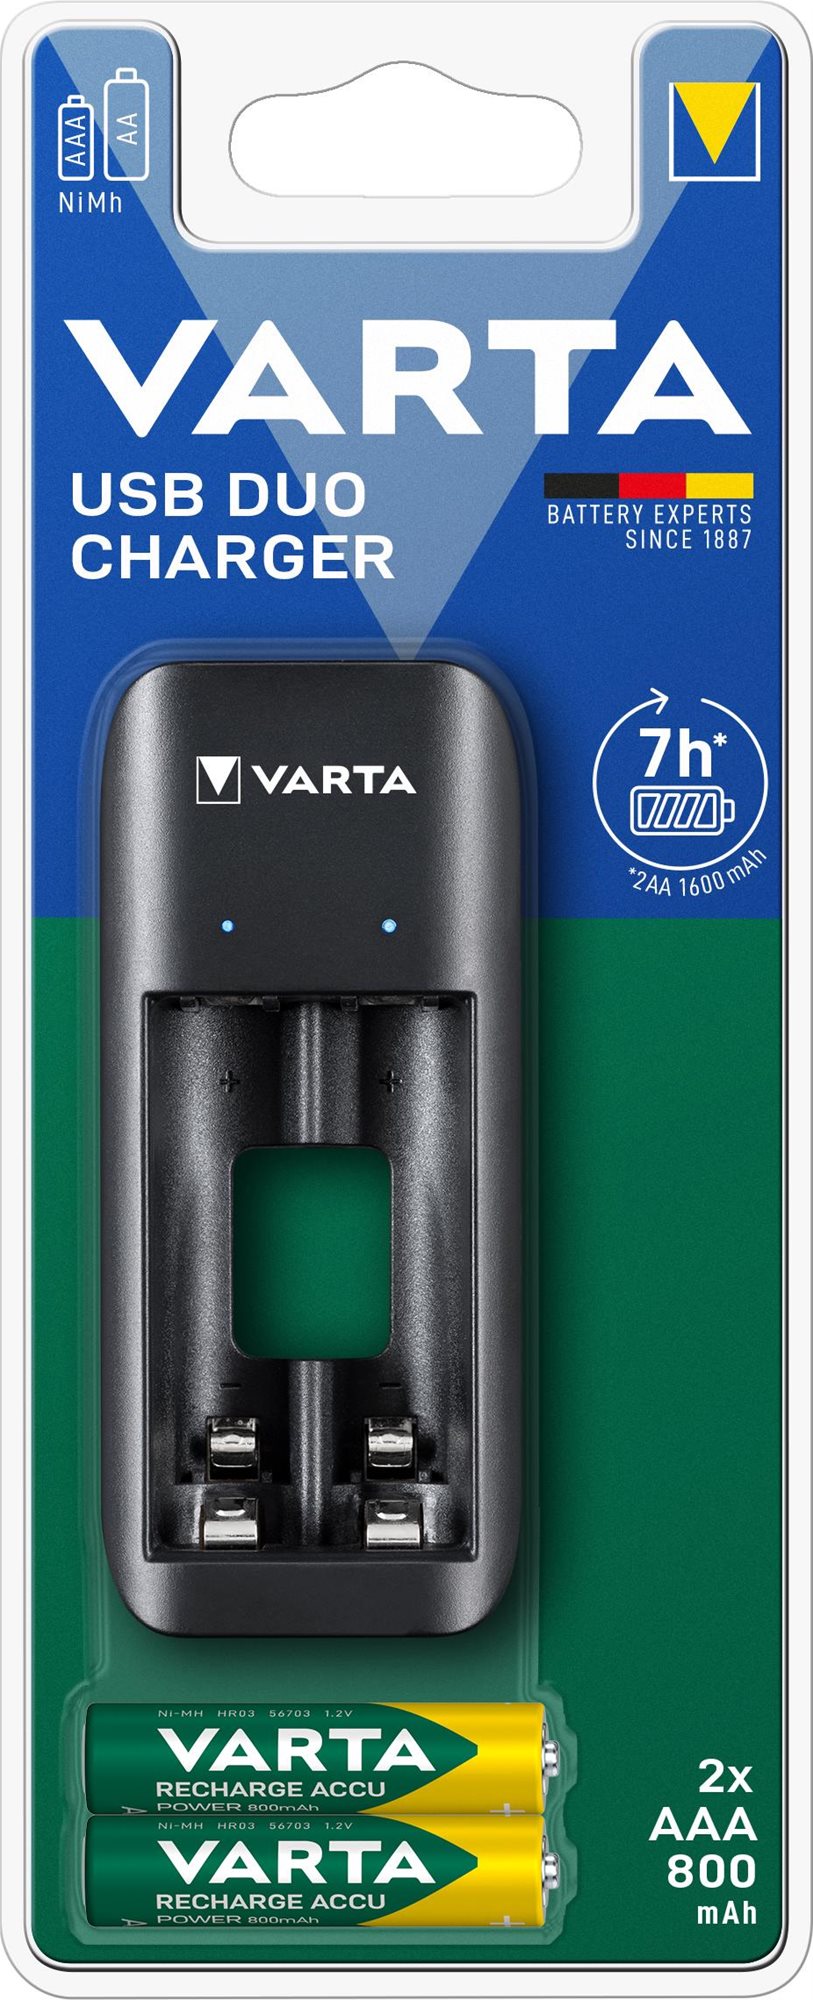 Töltő és pótakkumulátor VARTA Duo USB Charger Töltő + 2 AAA 800 mAh R2U